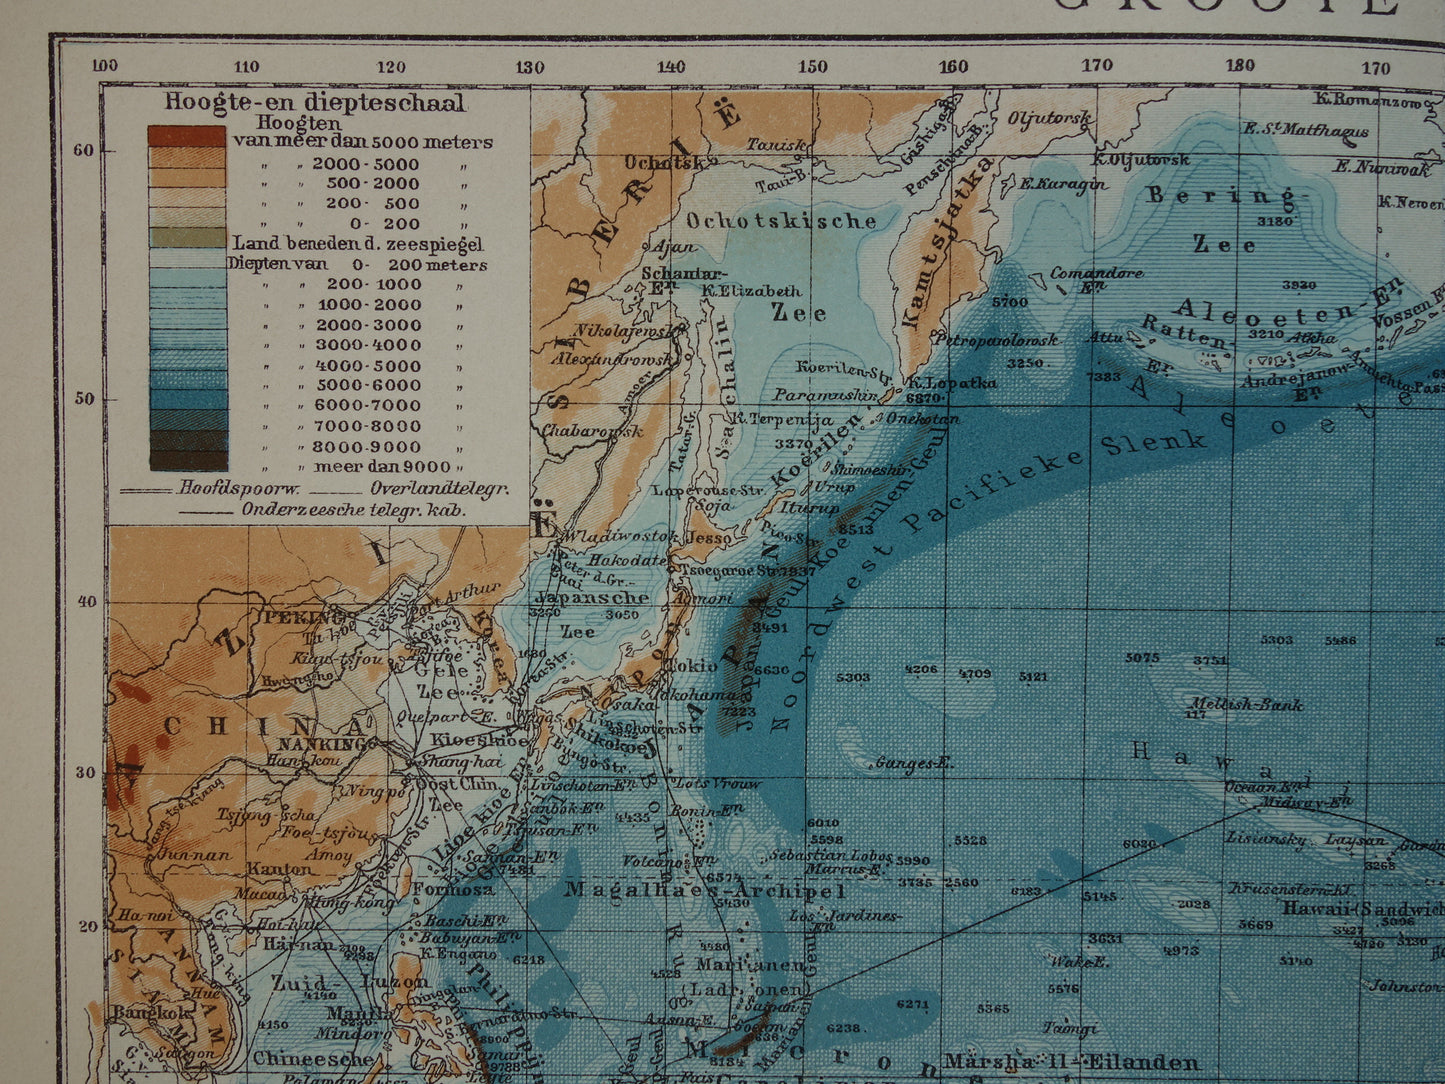 Oude kaart van de Grote Oceaan Originele 105+ jaar oude antieke Nederlandse landkaart Pacific